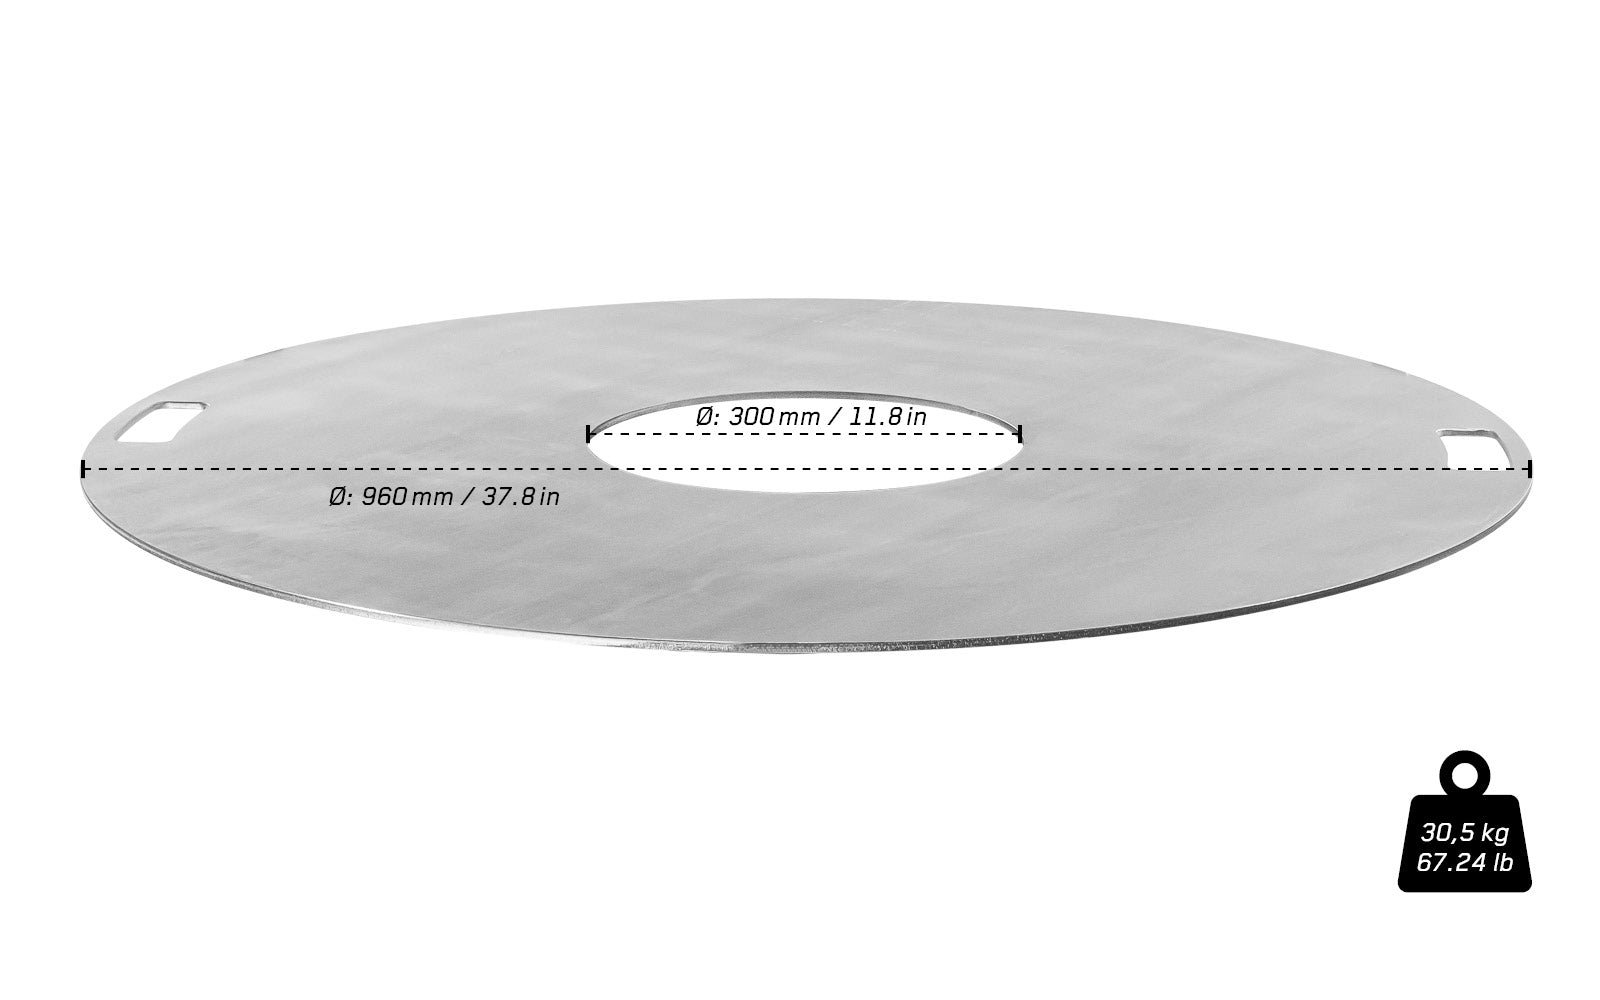 Edelstahl Feuerplatte freigestellt auf weißem Hintergrund mit Angaben zu Durchmesser und Gewicht